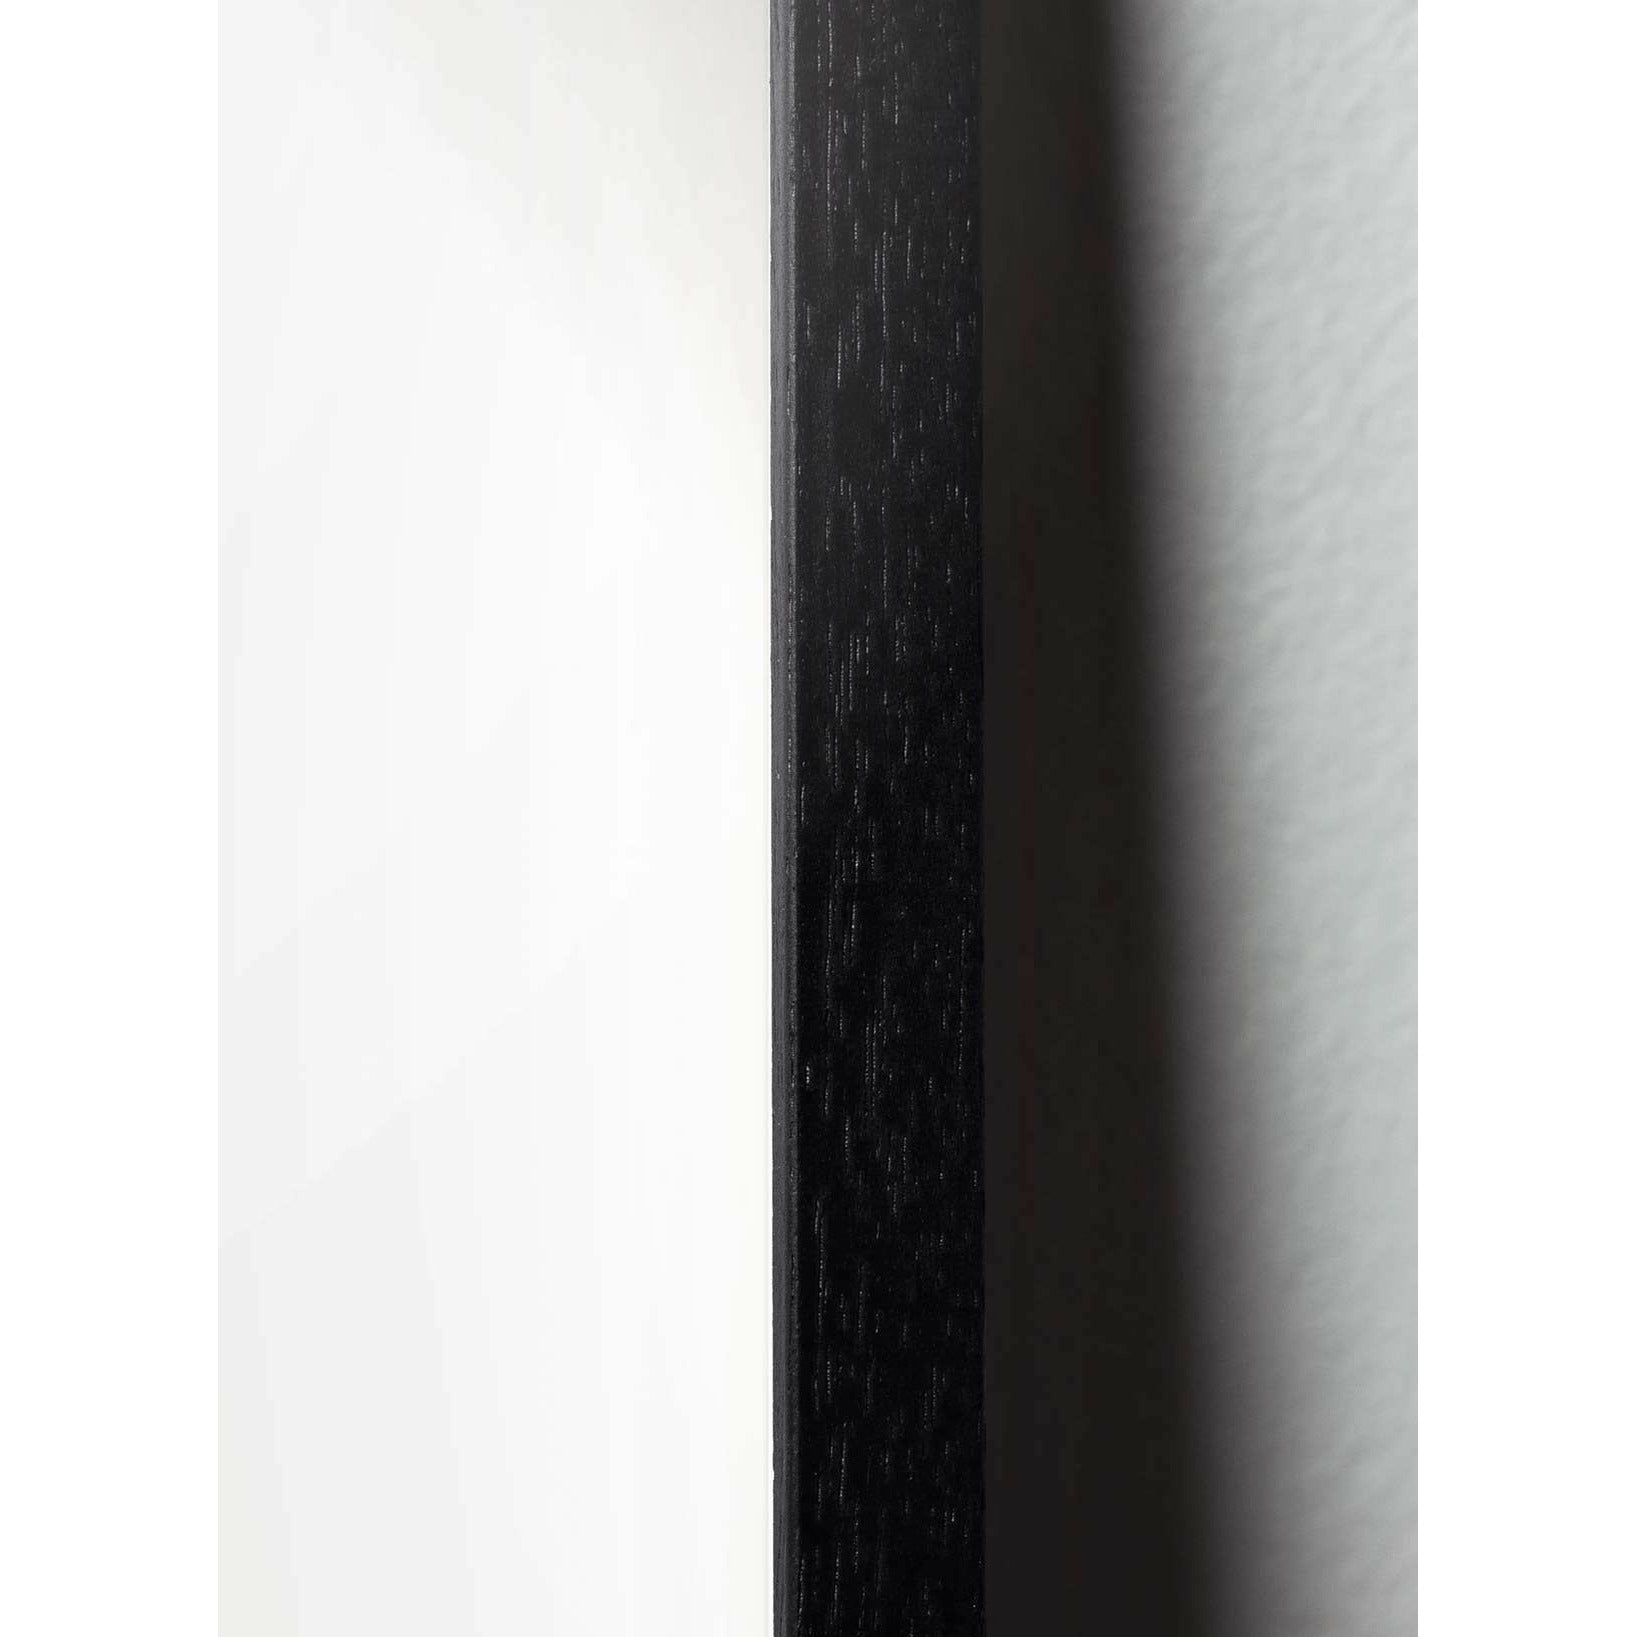 Plakát linie vajec z mozku, rám v černém lakovaném dřevěném dřevu A5, bílé pozadí